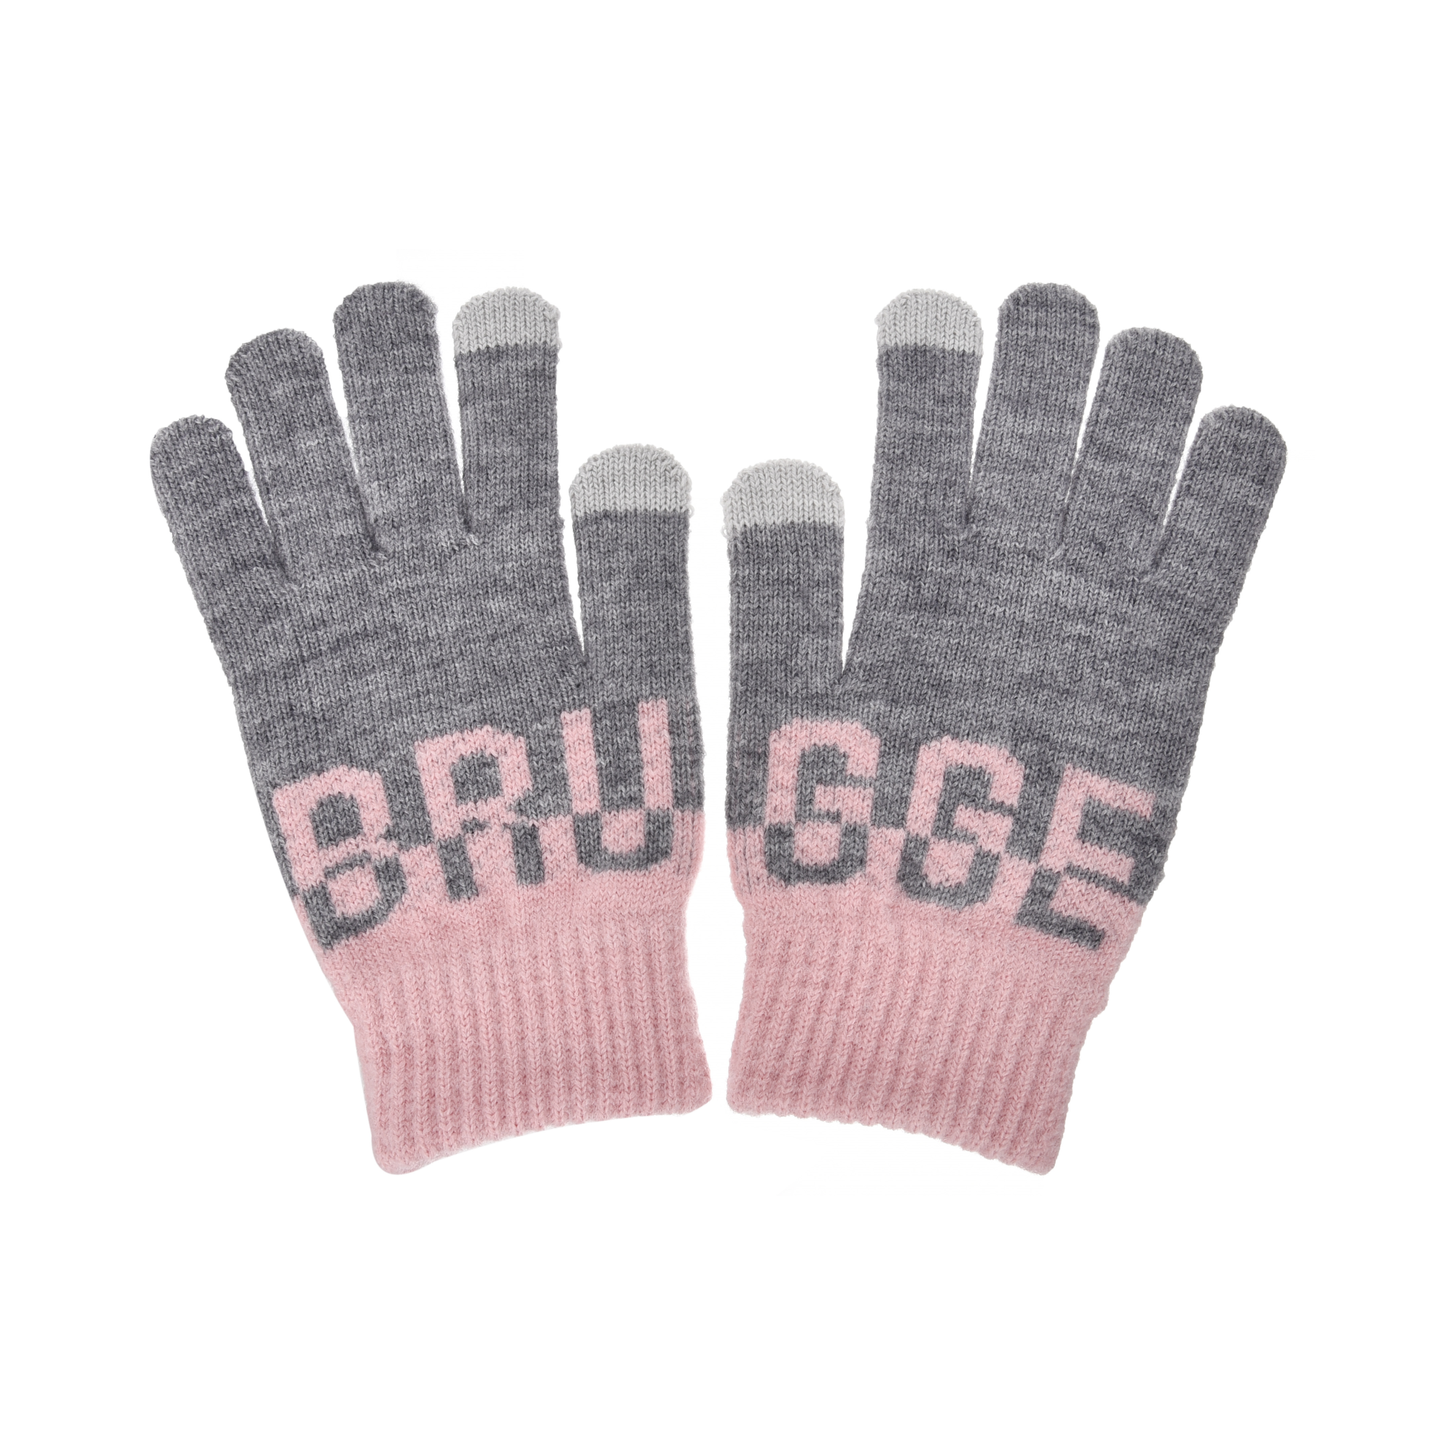 Anna - Gloves Women - Brugge